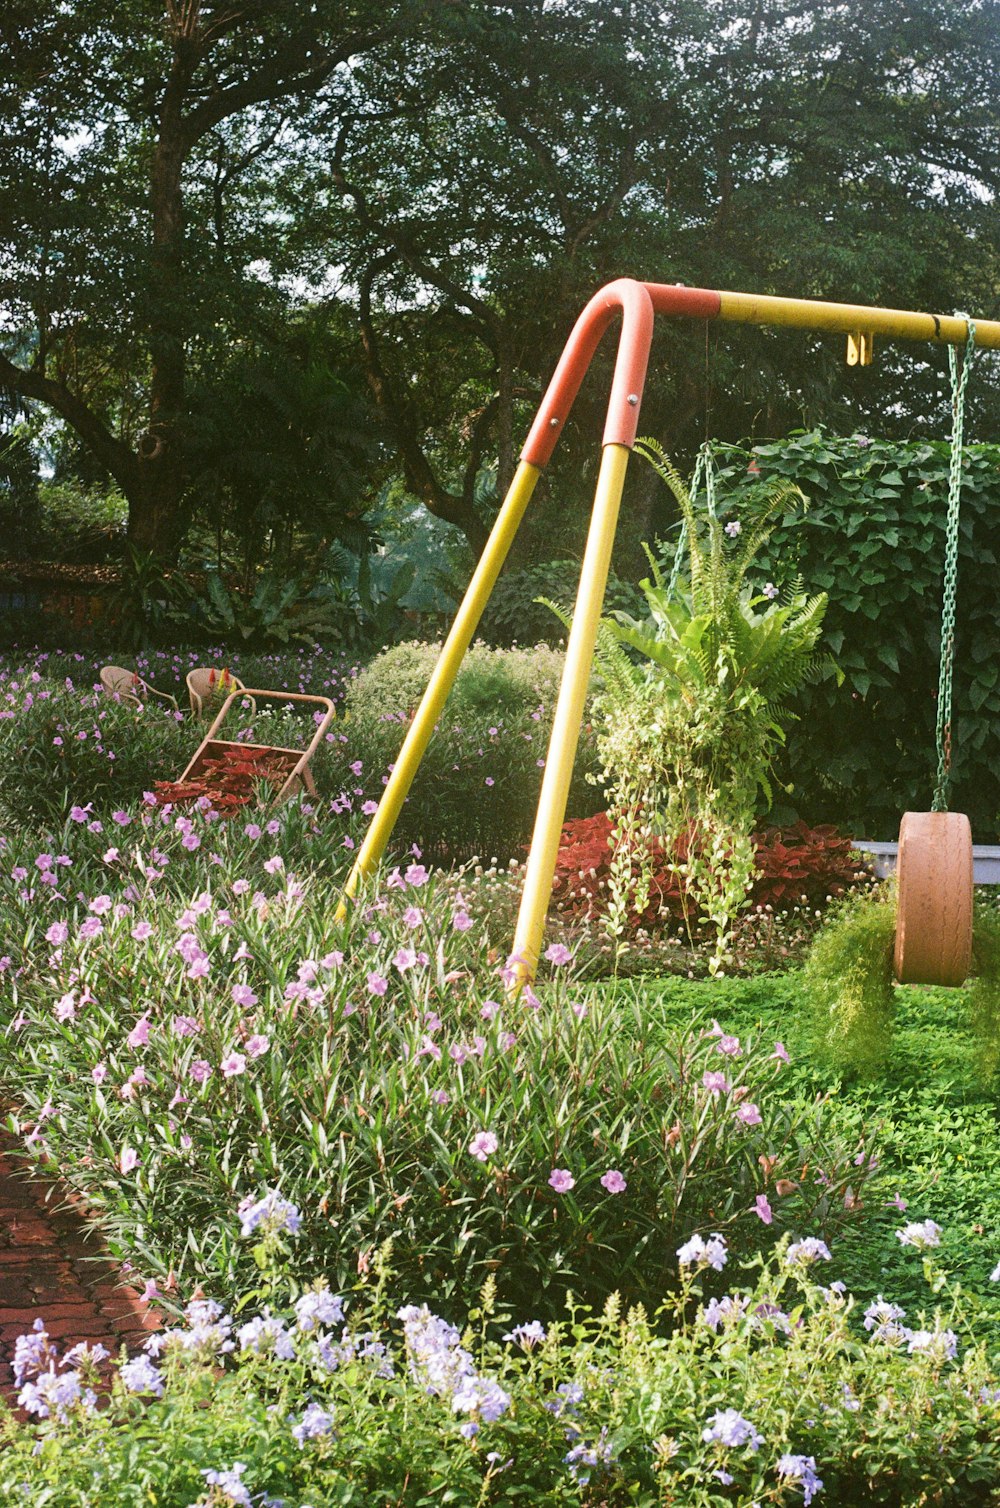 a swing set in a garden